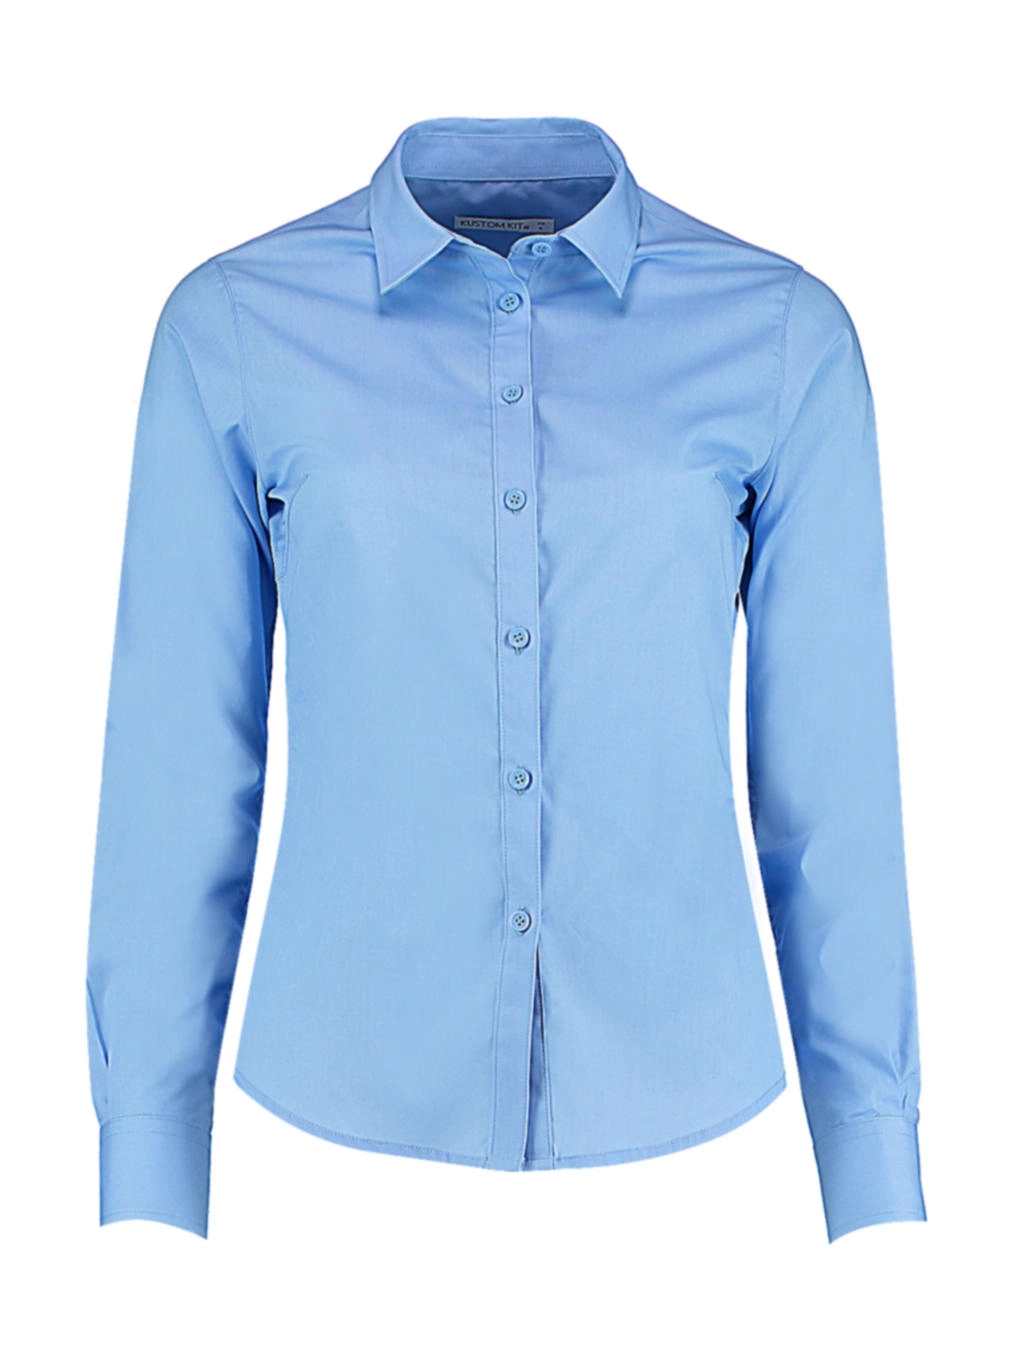 Women`s Tailored Fit Poplin Shirt zum Besticken und Bedrucken in der Farbe Light Blue mit Ihren Logo, Schriftzug oder Motiv.